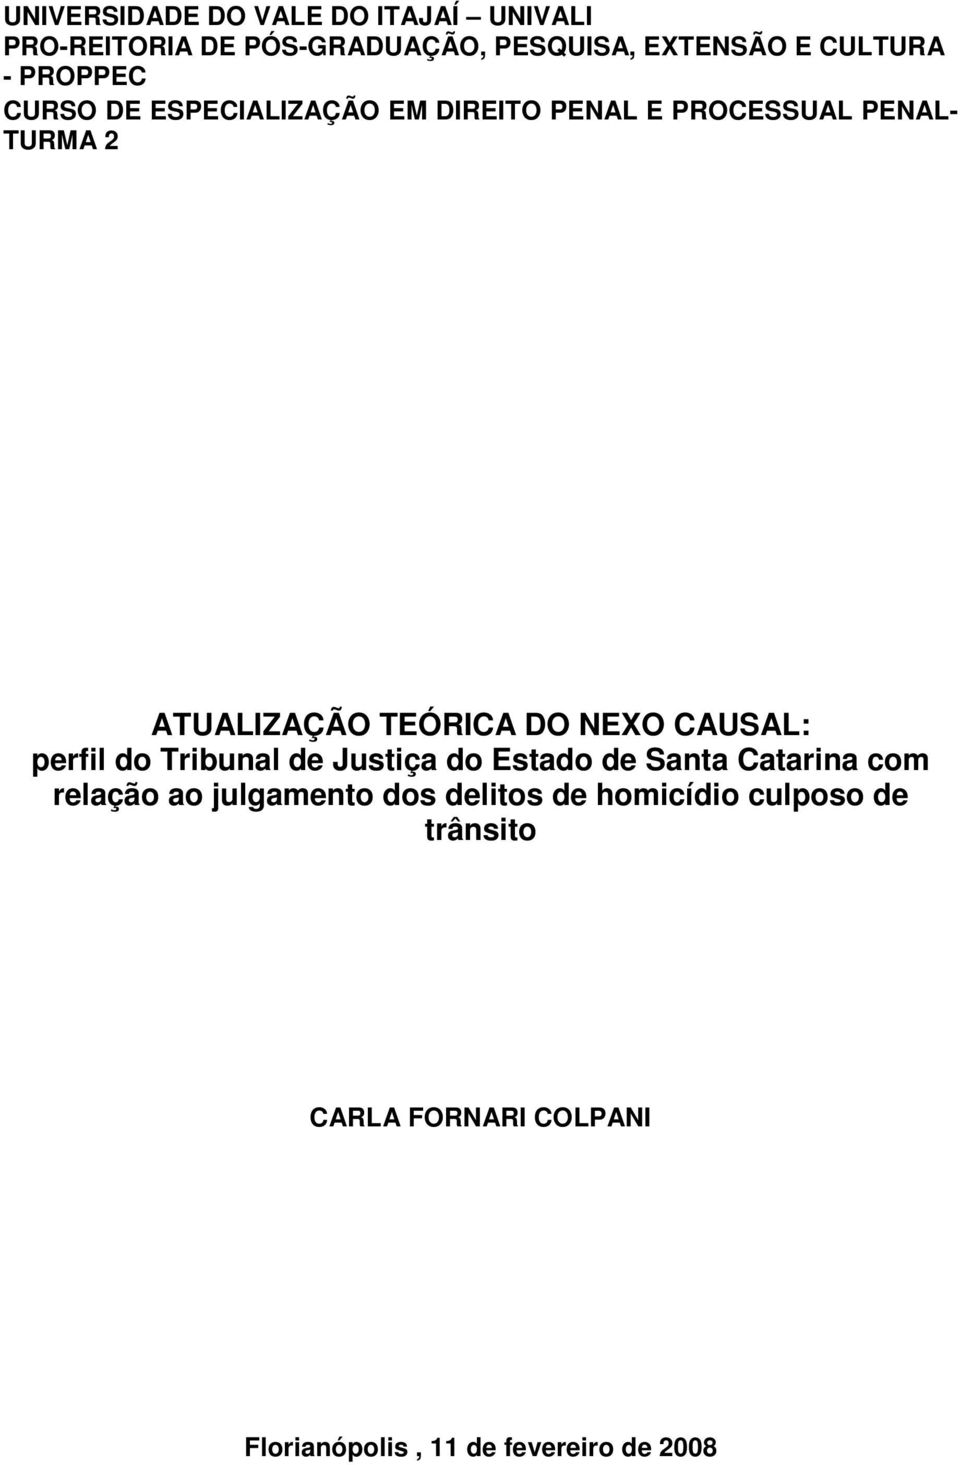 NEXO CAUSAL: perfil do Tribunal de Justiça do Estado de Santa Catarina com relação ao julgamento dos